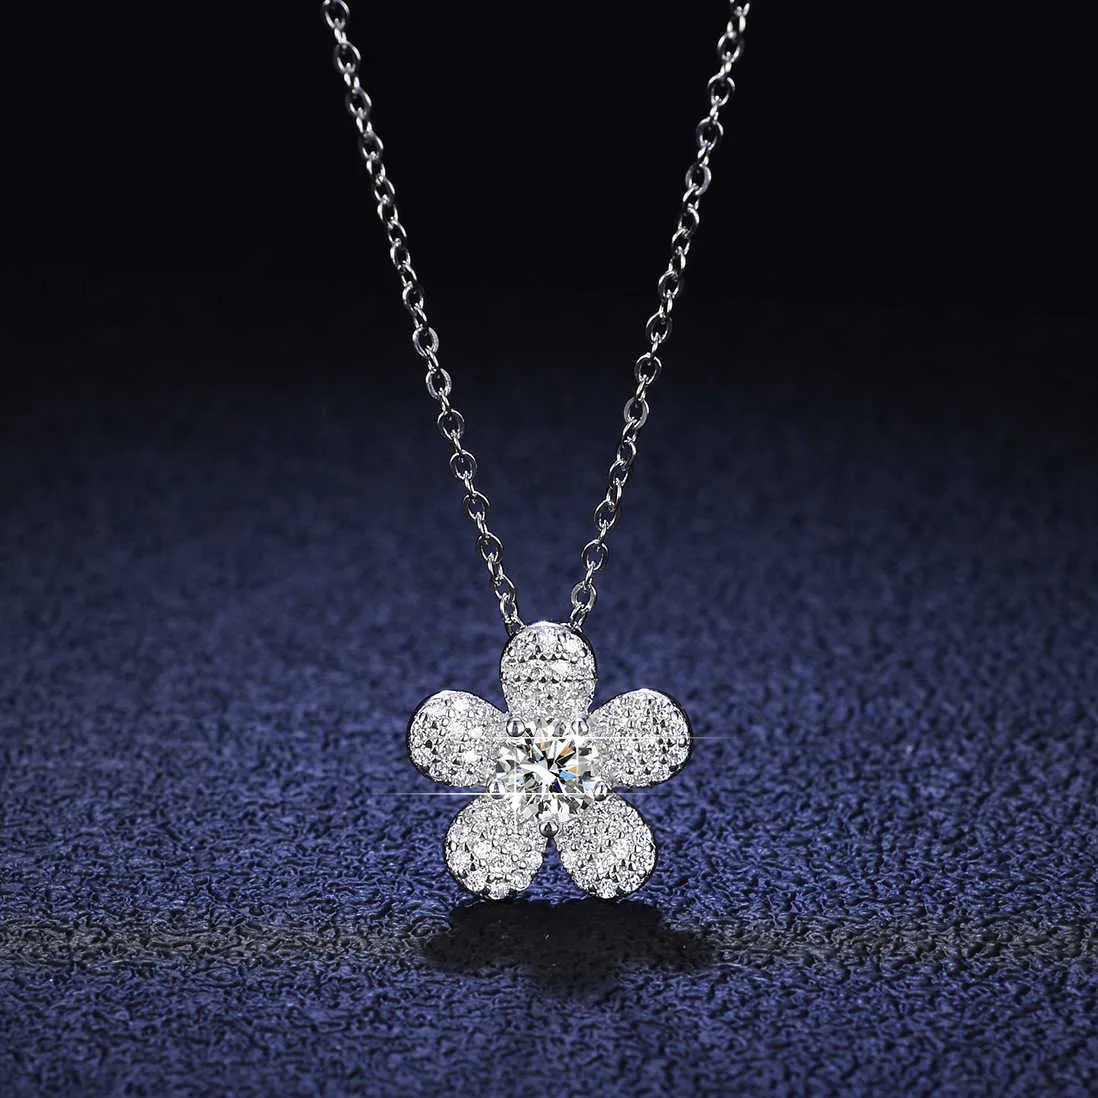 Sterling Sier 925 Pendant 1 Collier de diamant Moislant Fashion Camellia Sier Sier Pendant Collar Chain